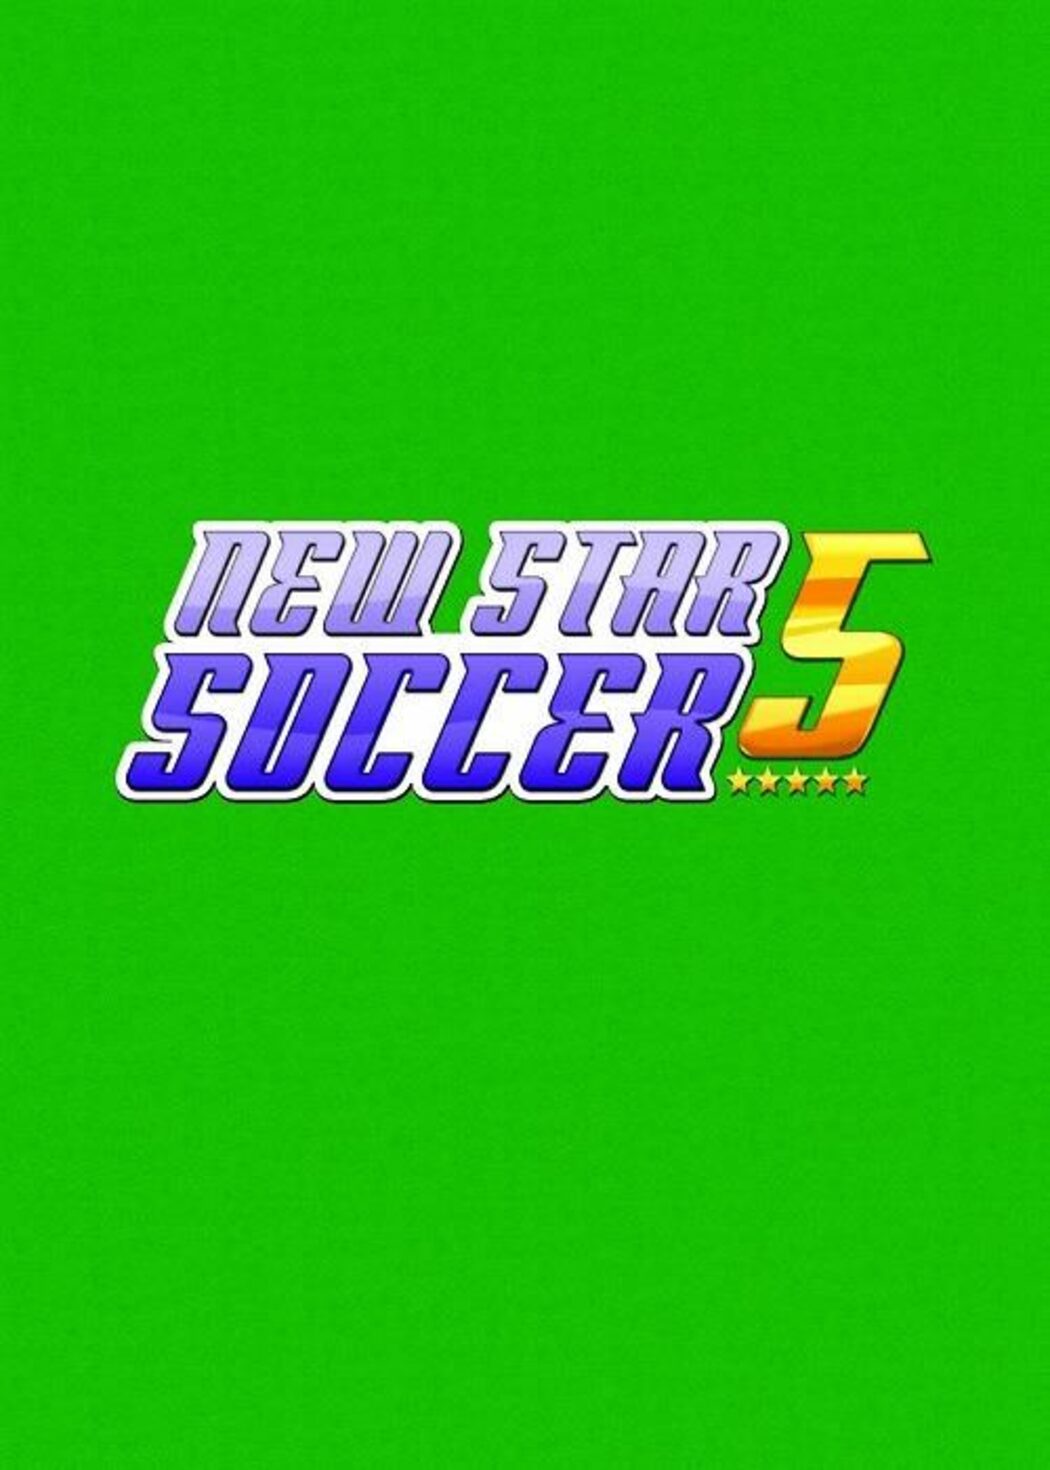 New star soccer. New Star Soccer 5.